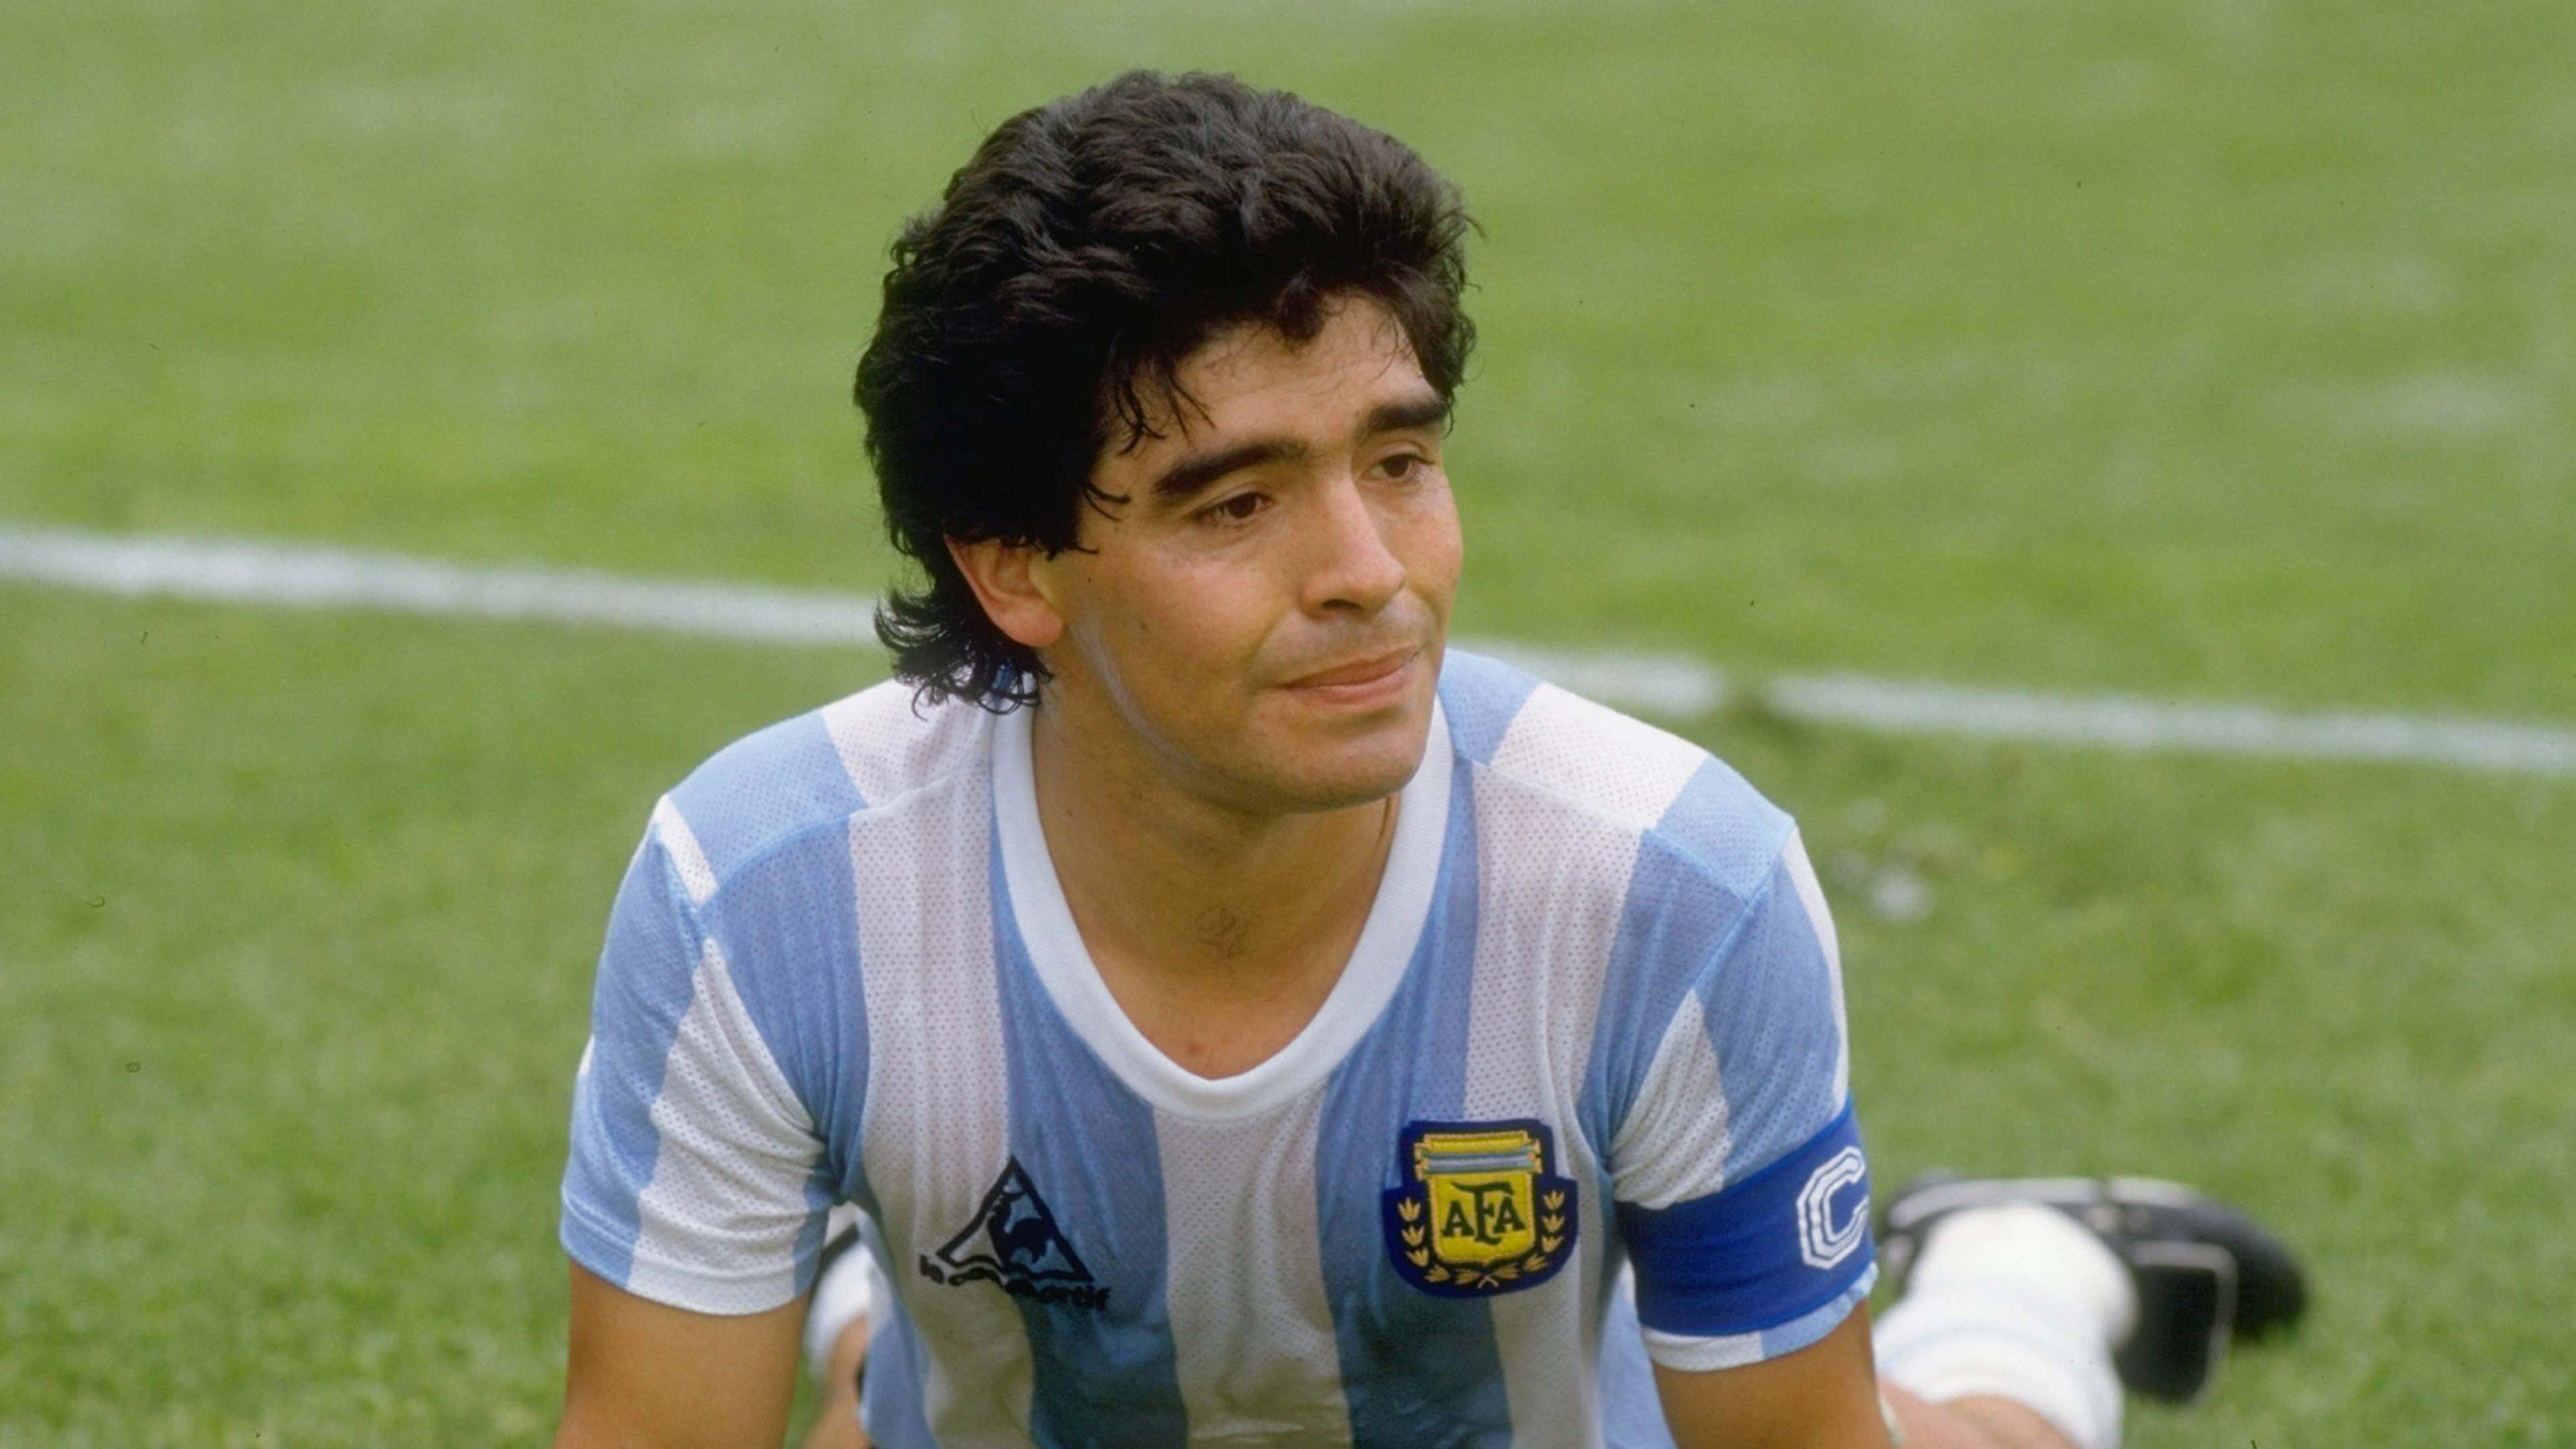 Diego Armando Maradona biography